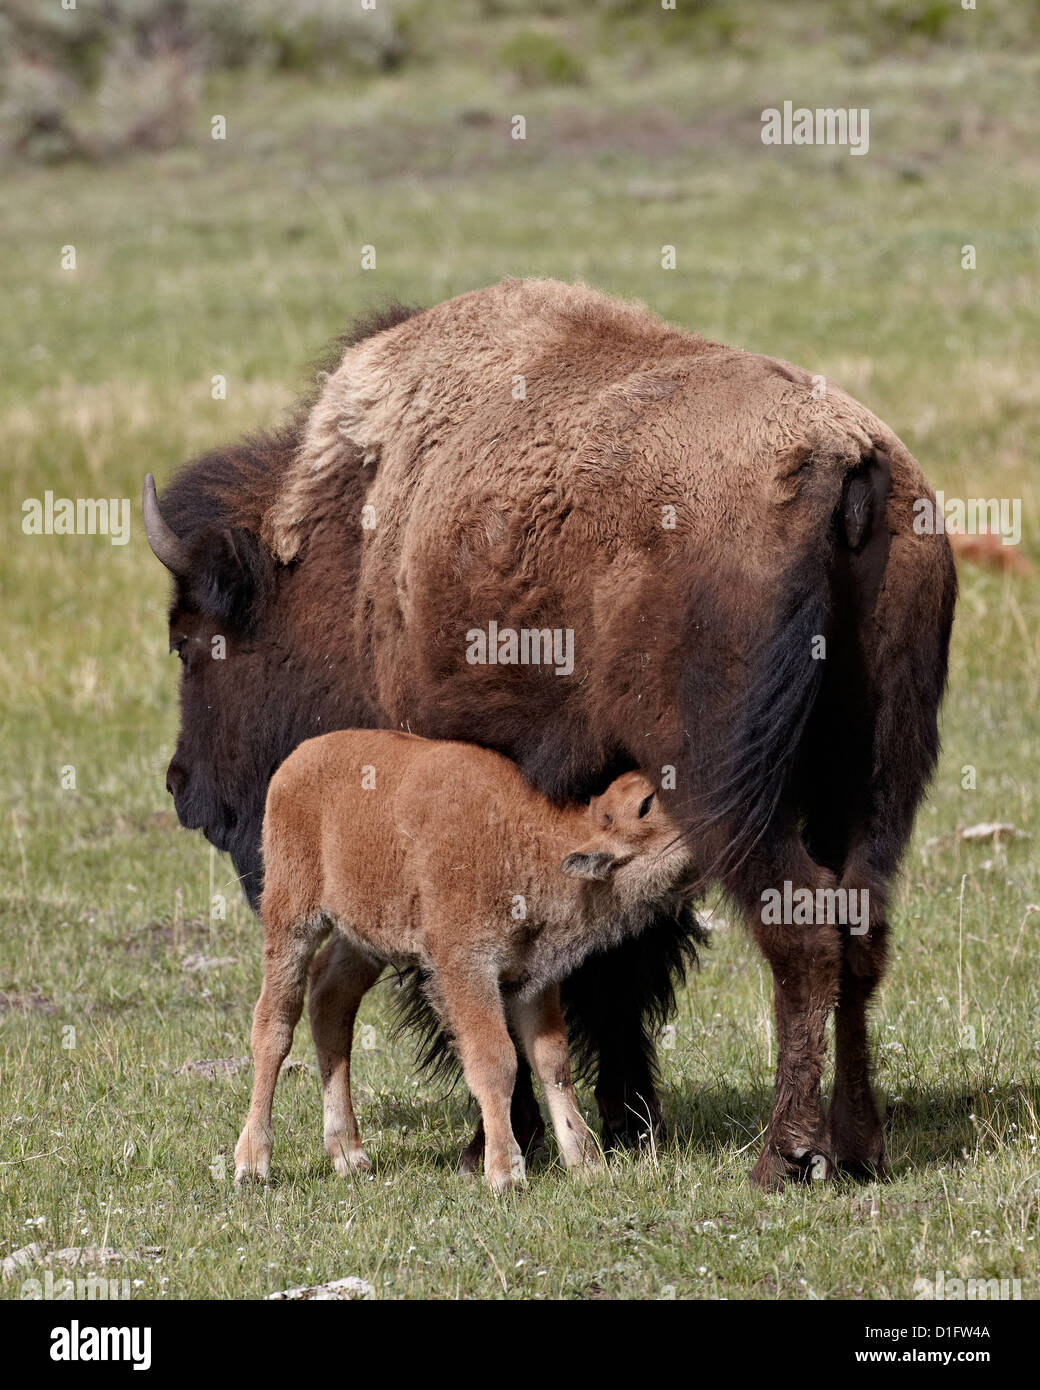 Bison (Bison bison) Soins infirmiers vache son veau, le Parc National de Yellowstone, Wyoming, États-Unis d'Amérique, Amérique du Nord Banque D'Images